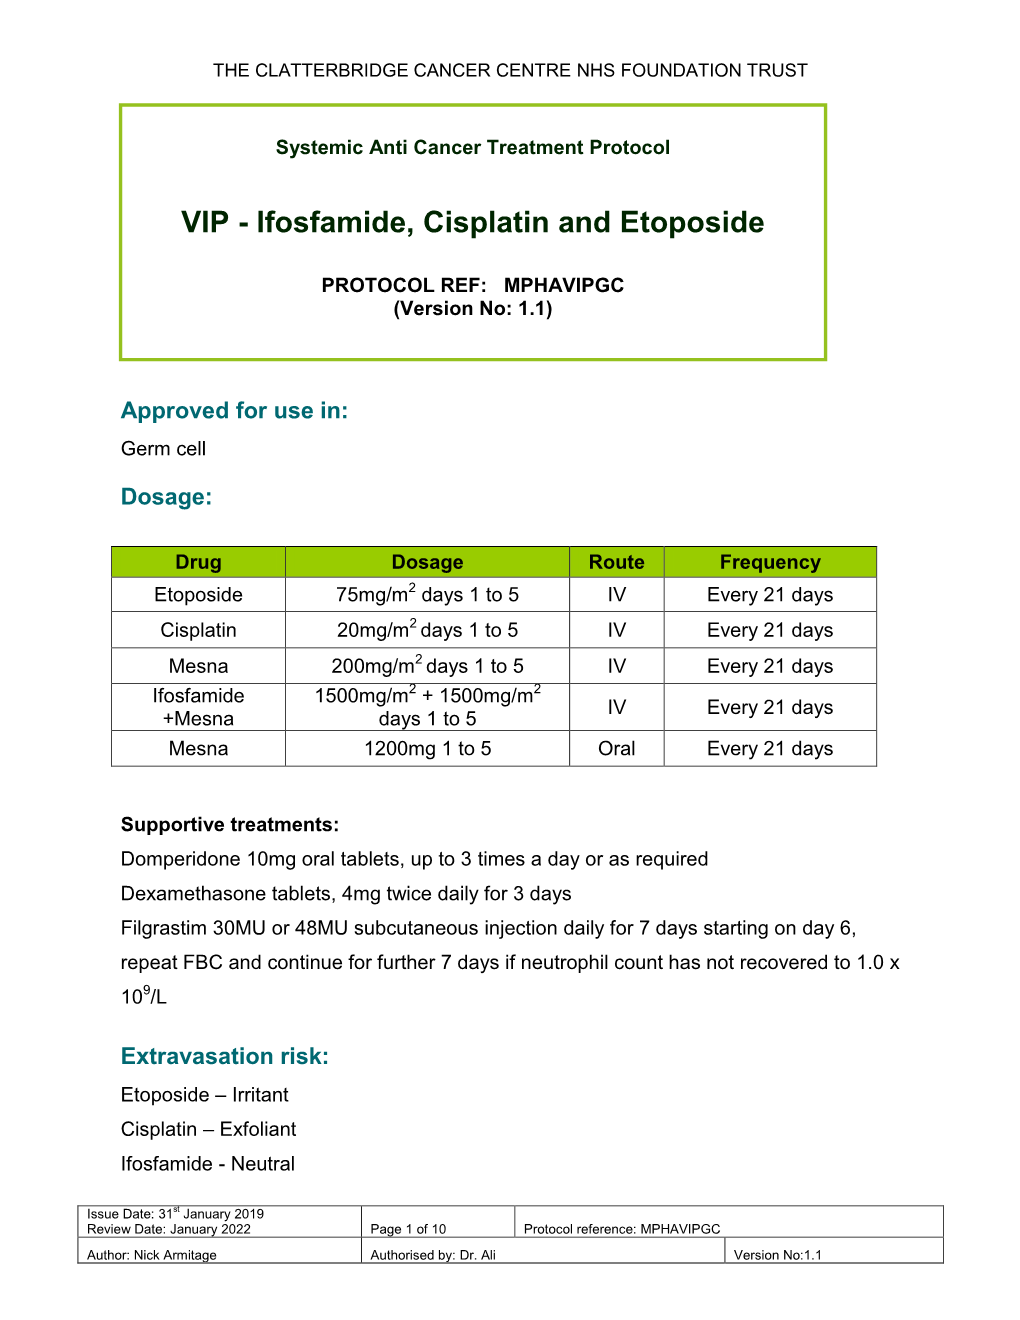 VIP - Ifosfamide, Cisplatin and Etoposide